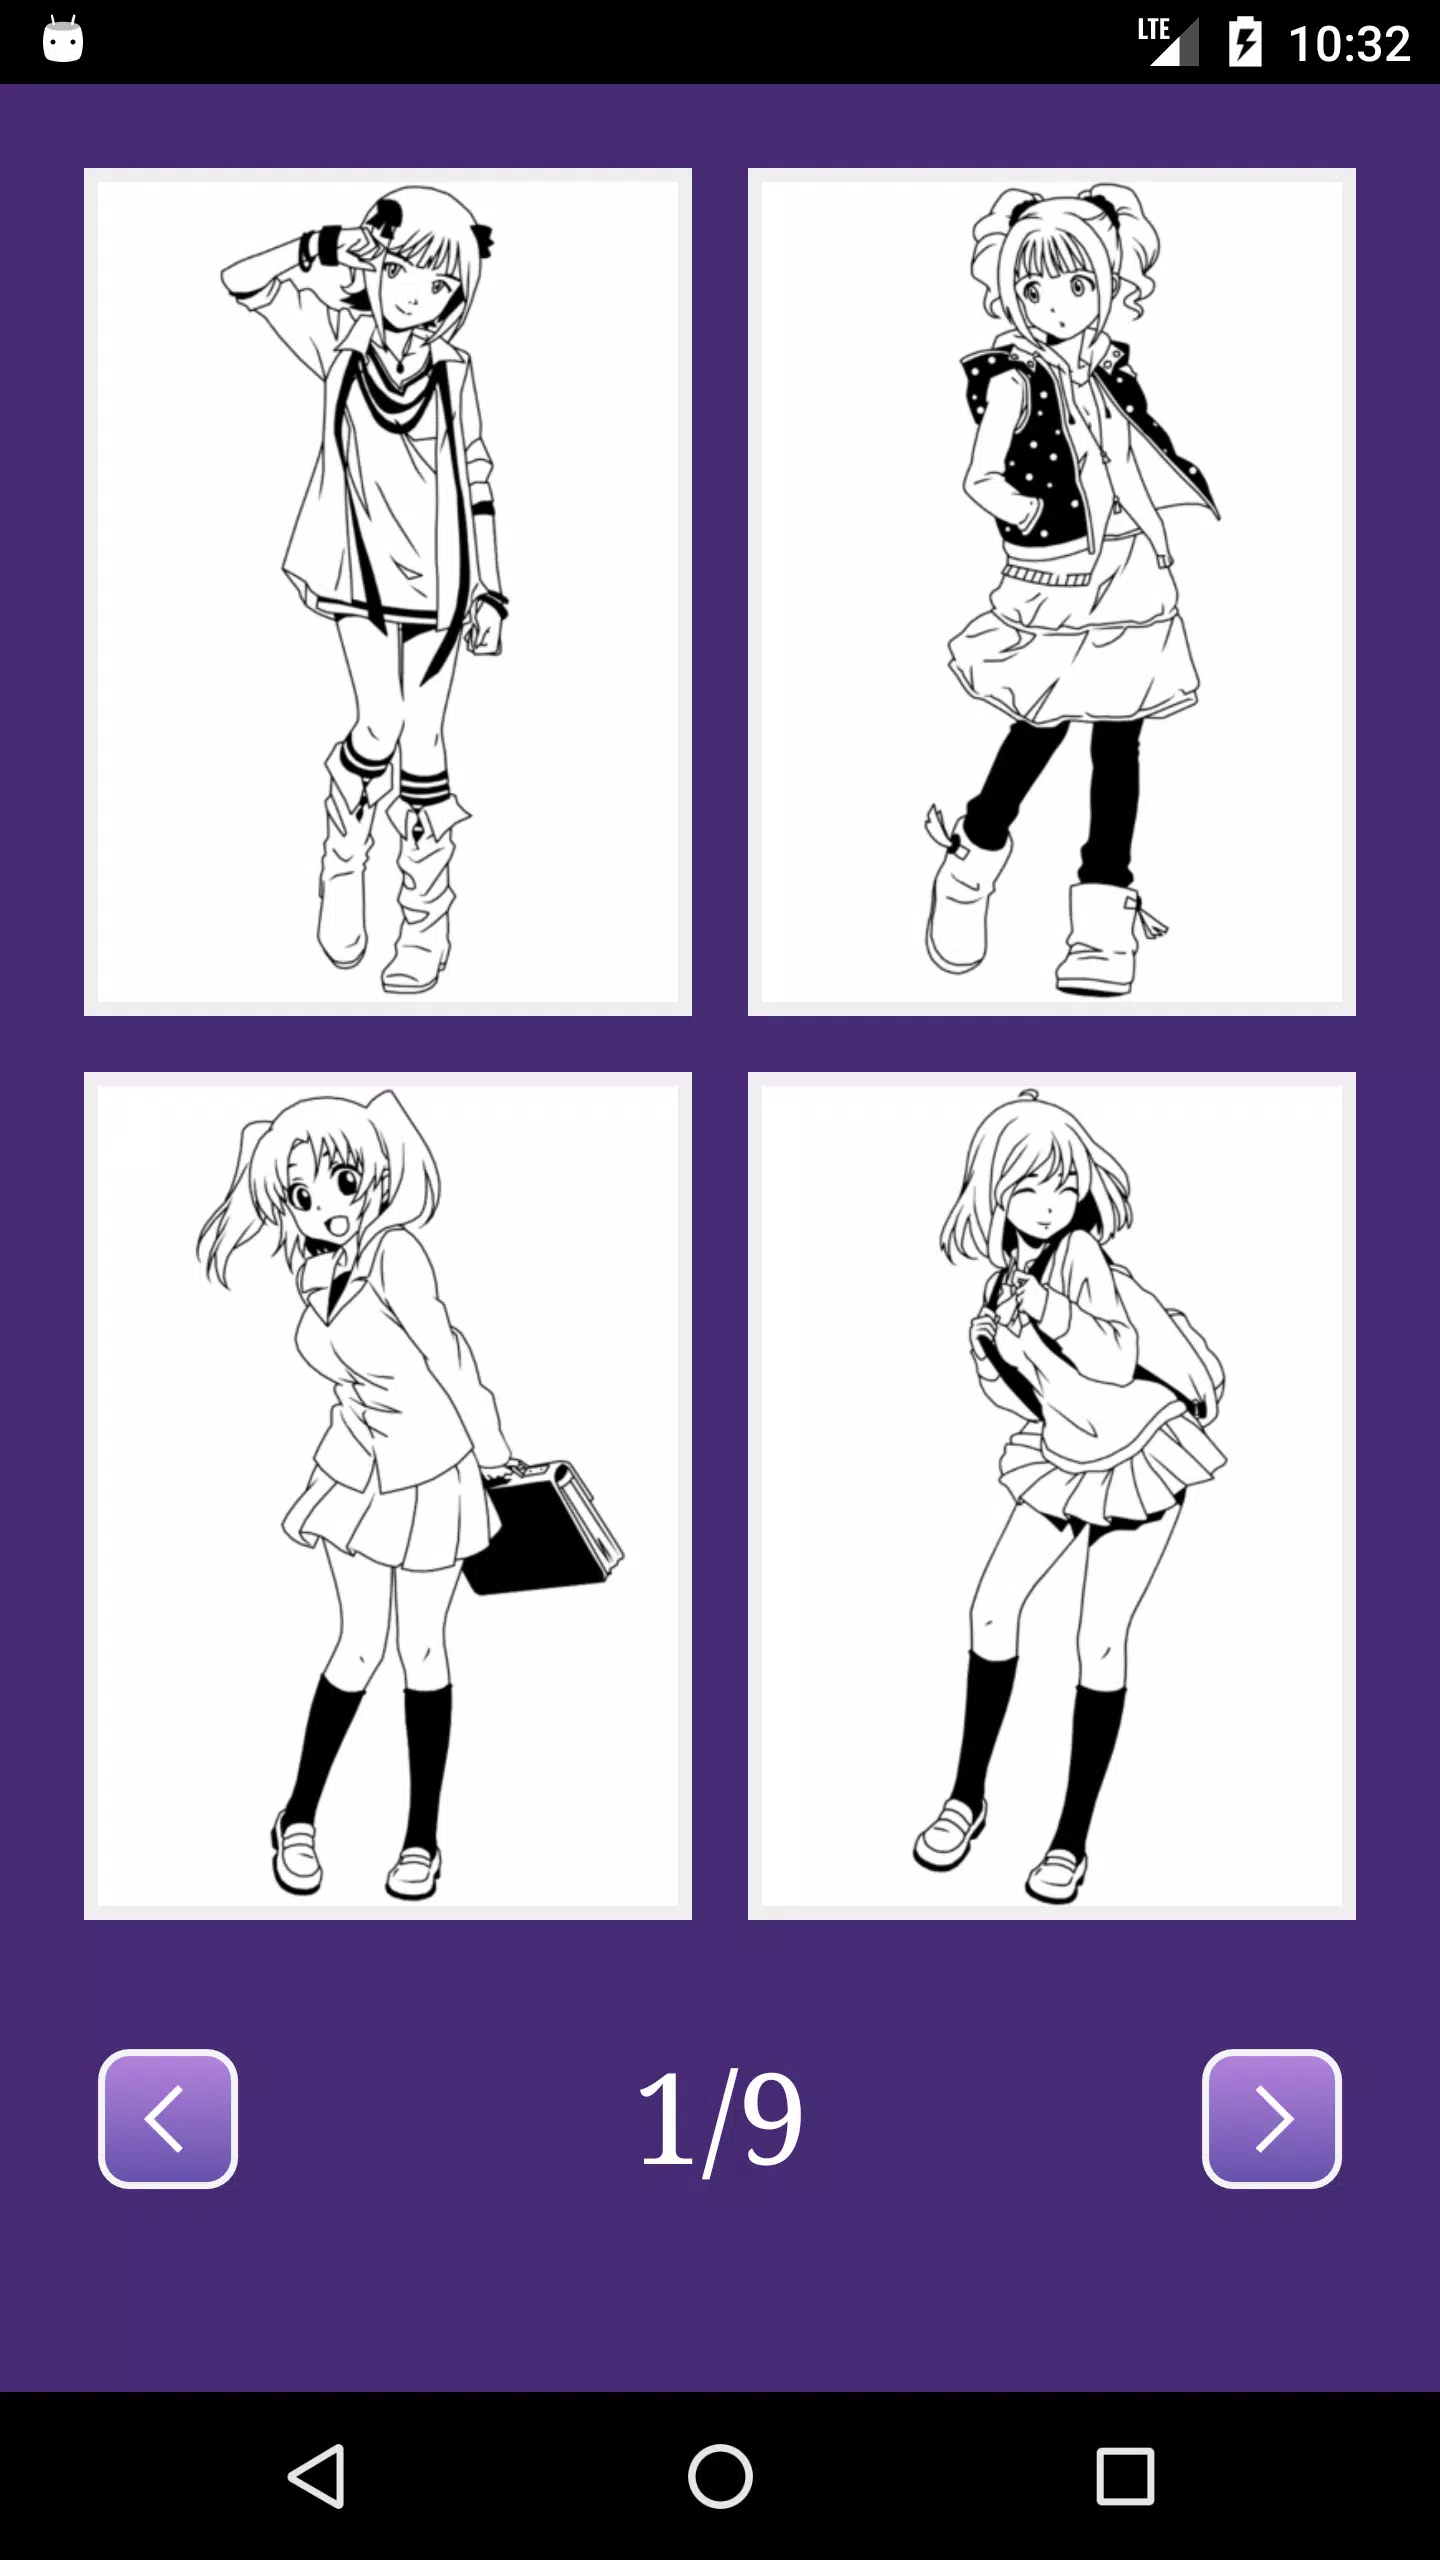 Desenho de menina da escola de anime para colorir - Grátis